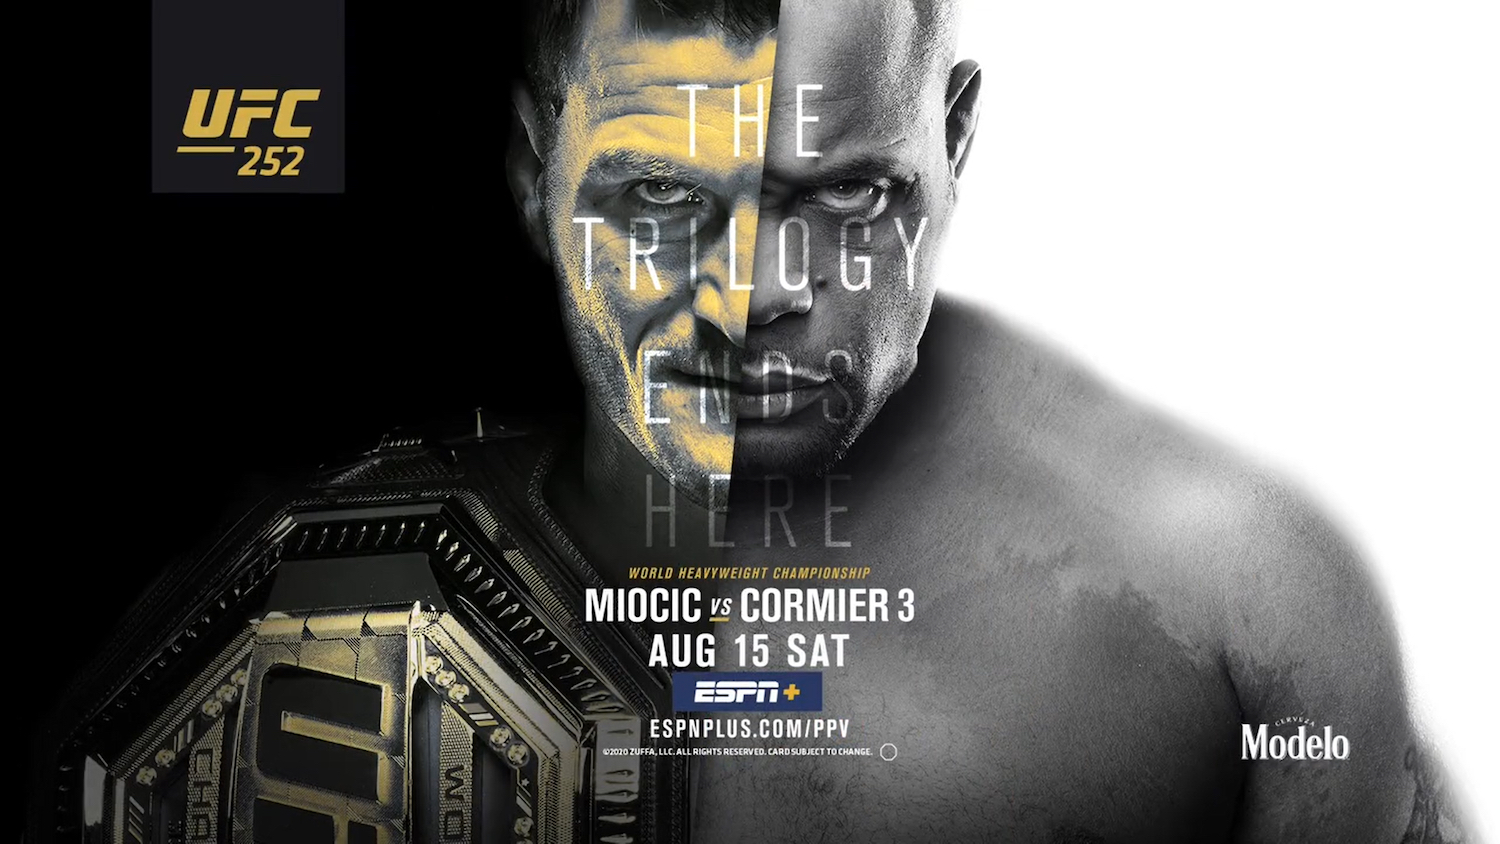 UFC 252 - Miocic vs Cormier 3 - Poster